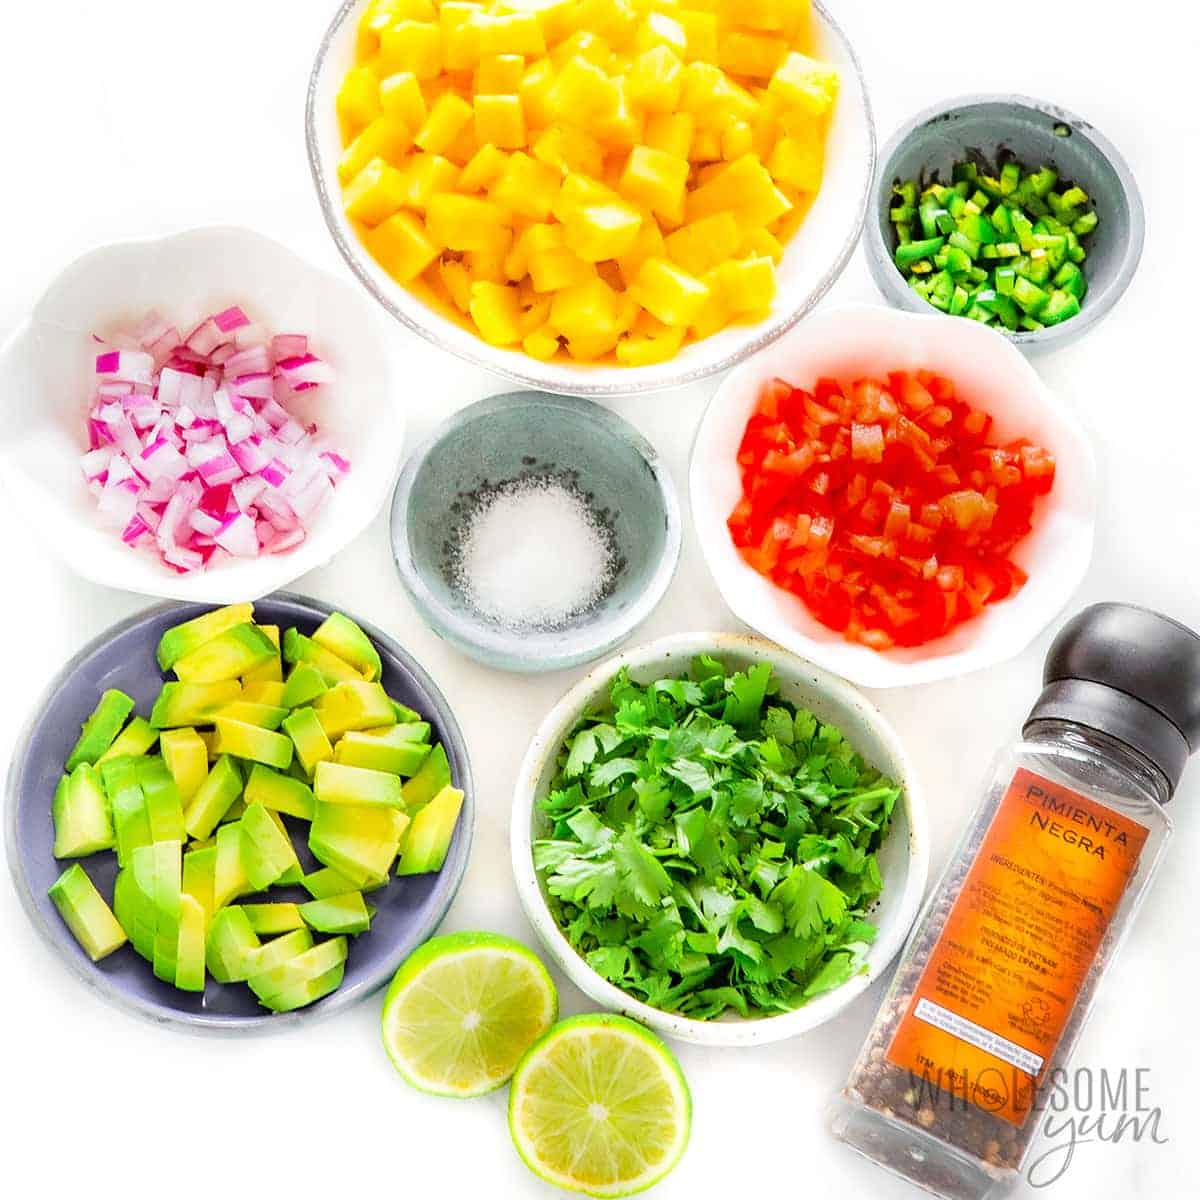 Pineapple salsa ingredients in bowls.